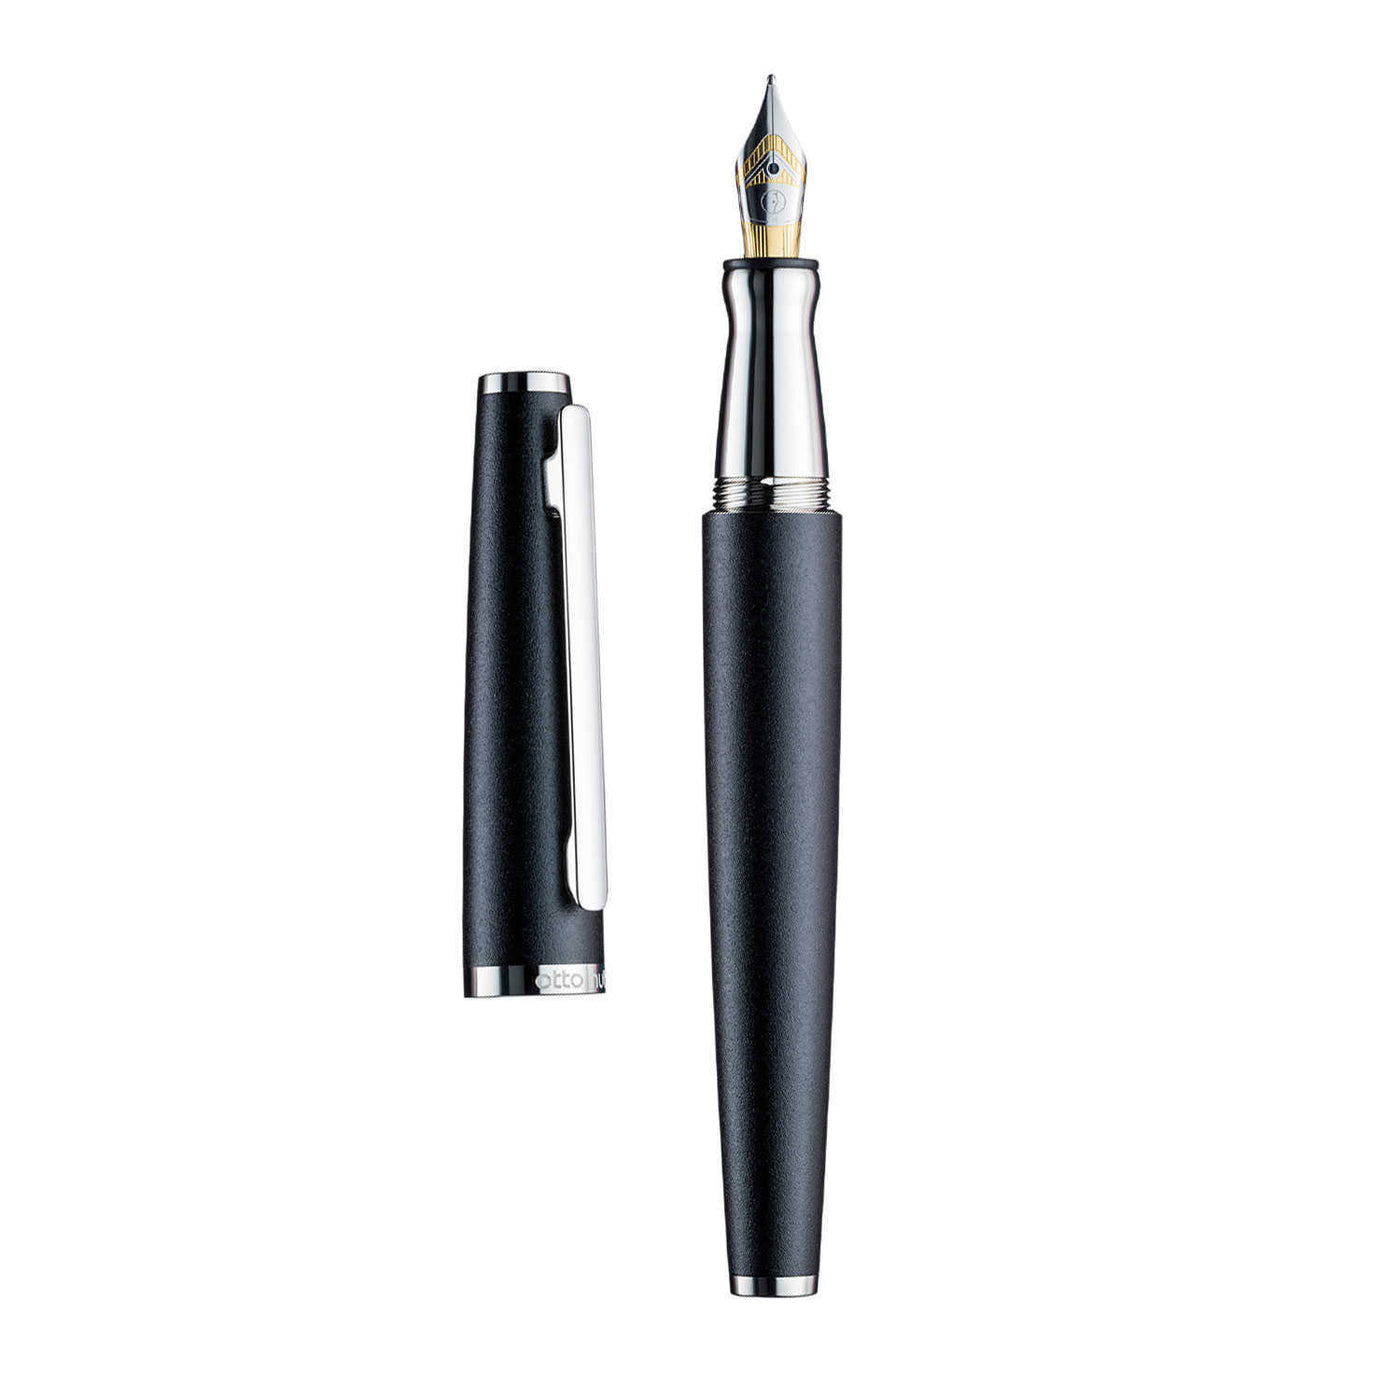 Otto Hutt Design 06 Fountain Pen, Black - Bicolour Steel Nib